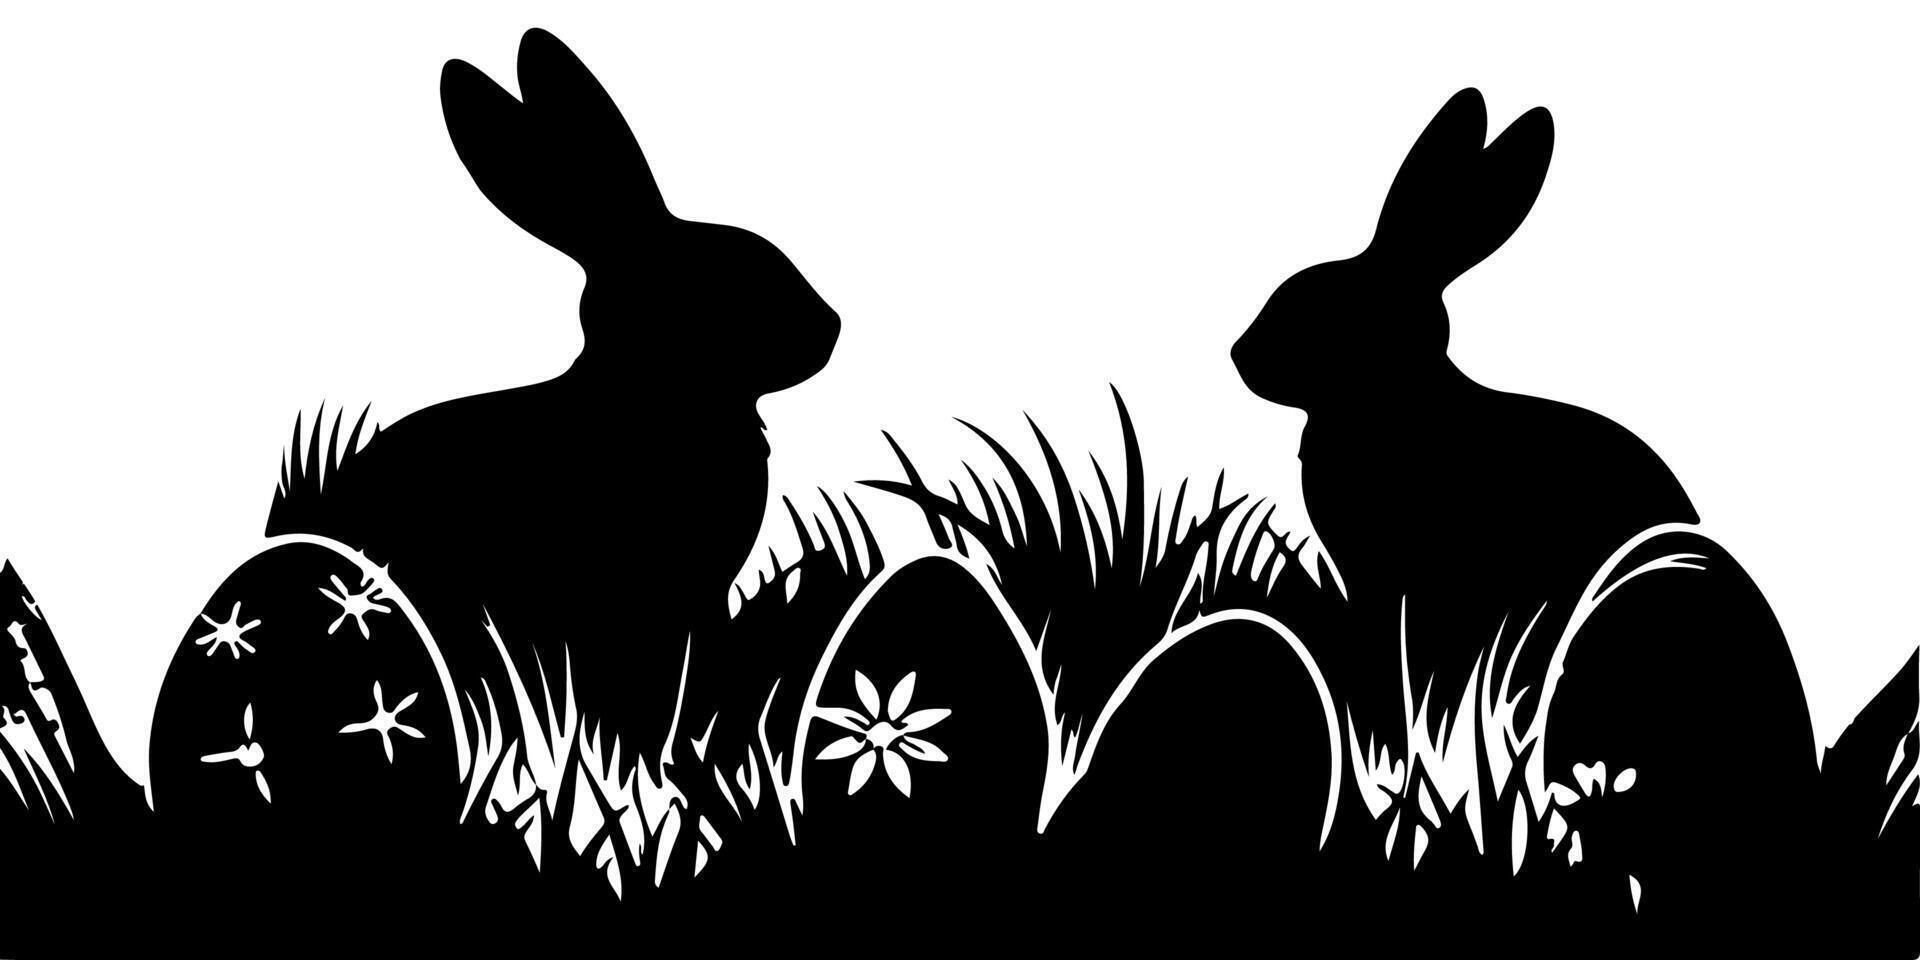 contento Pasqua uovo giorno con bambini, coniglietto. coniglio e nero erba silhouette senza soluzione di continuità su trasparente sfondo vettore